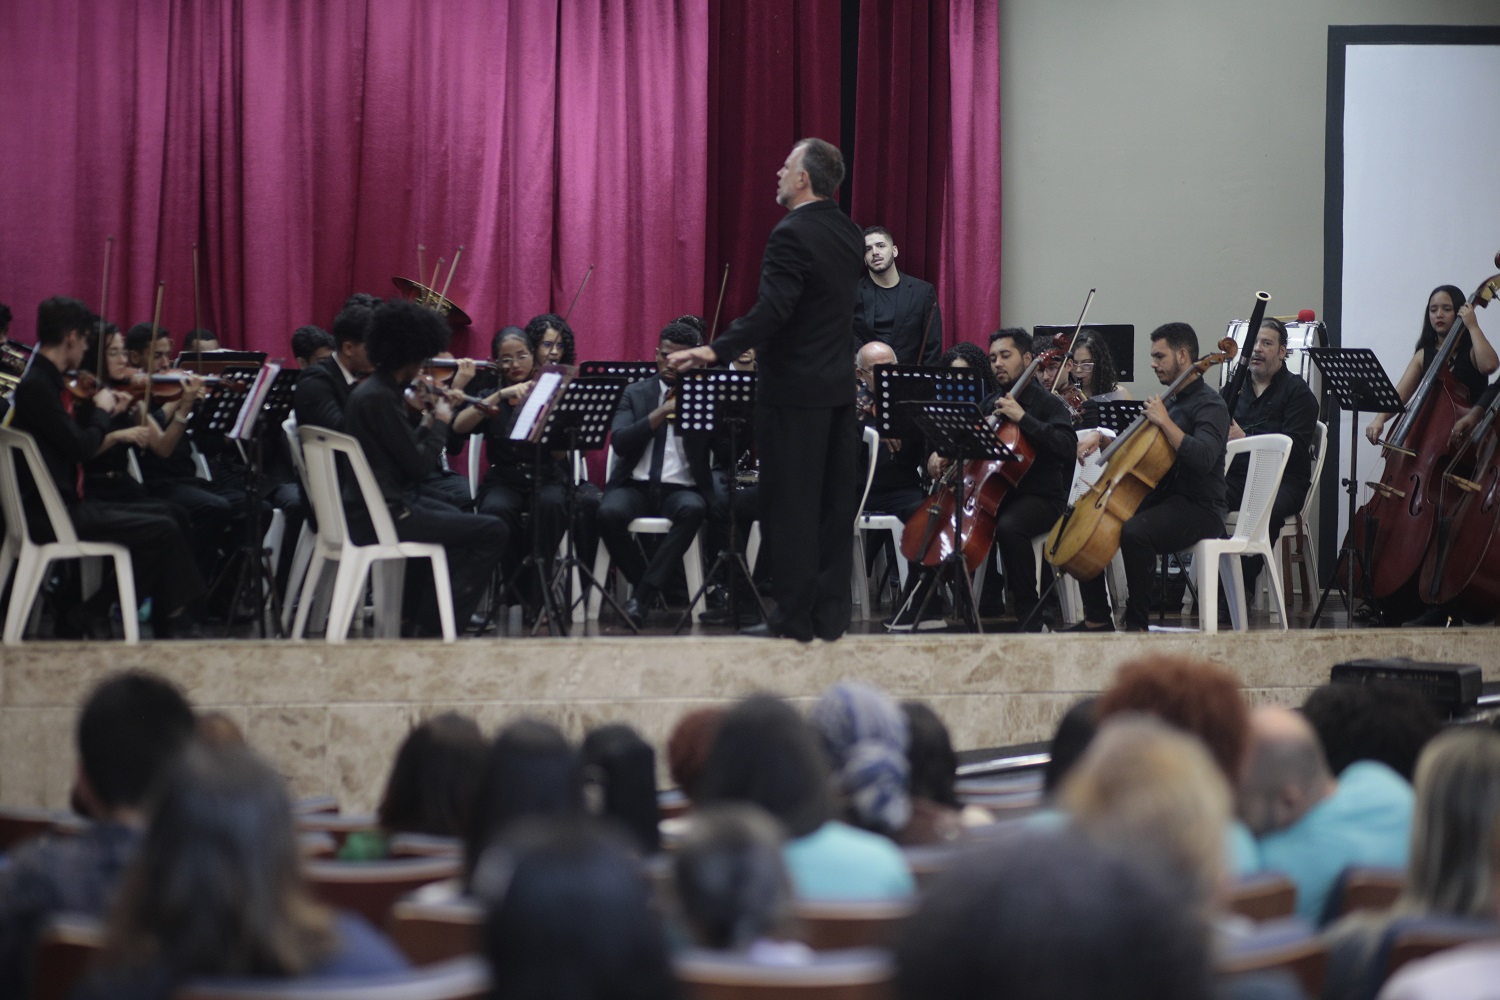 Apresentação do Coro e Orquestra Sinfônica da UFS marcou abertura do evento. (foto: Thaisy Santa Rosa/Ascom UFS)